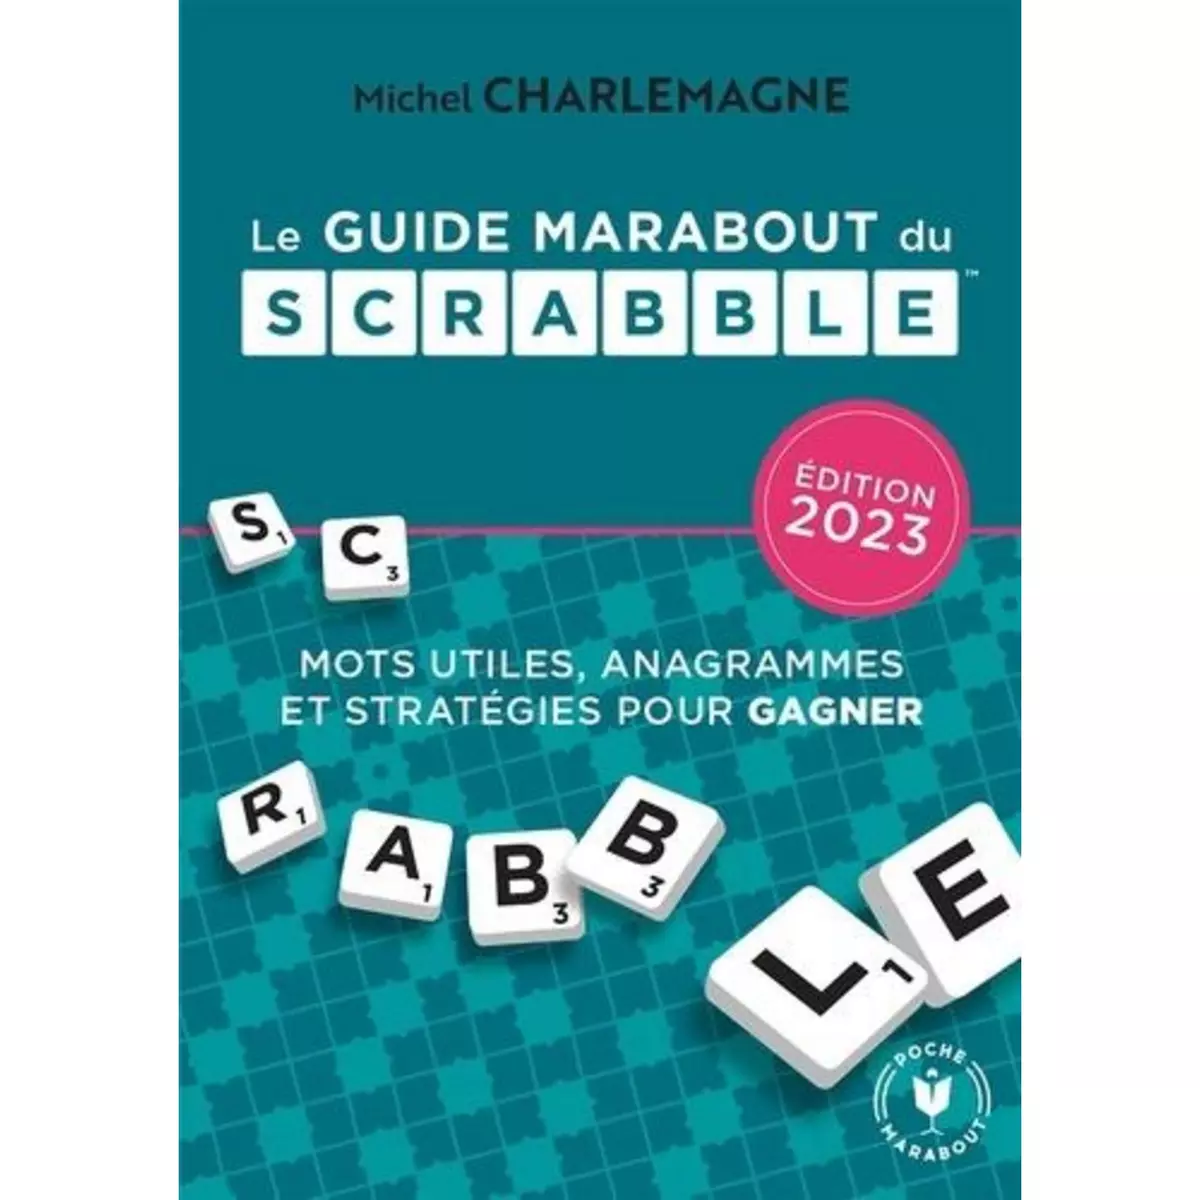  LE GUIDE MARABOUT DU SCRABBLE. EDITION 2023, Charlemagne Michel